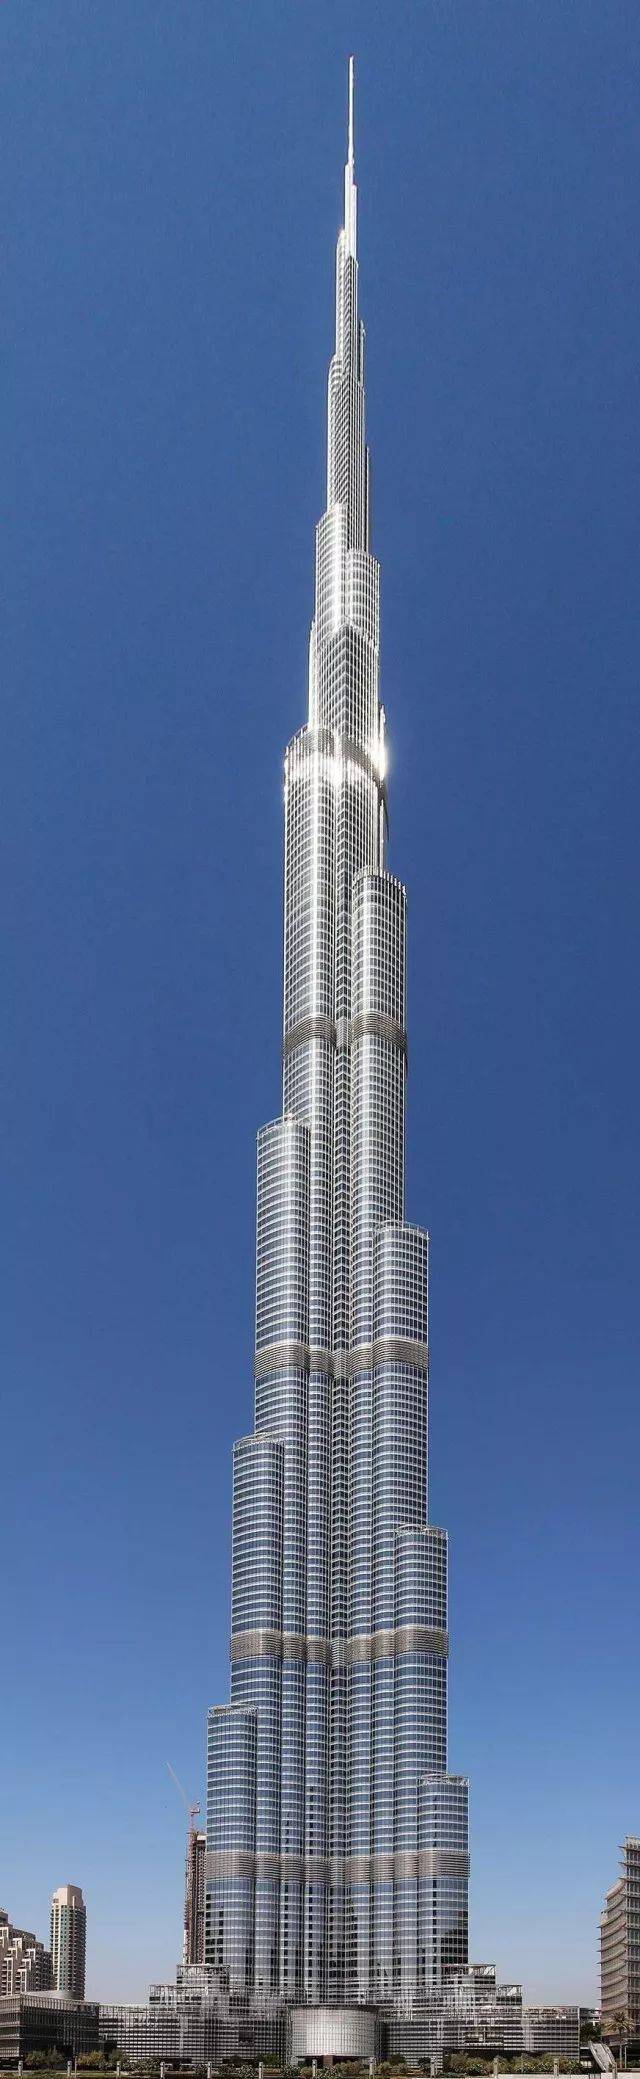 让你的手指划过828米的世界第一高楼 迪拜哈利法塔整层出售!